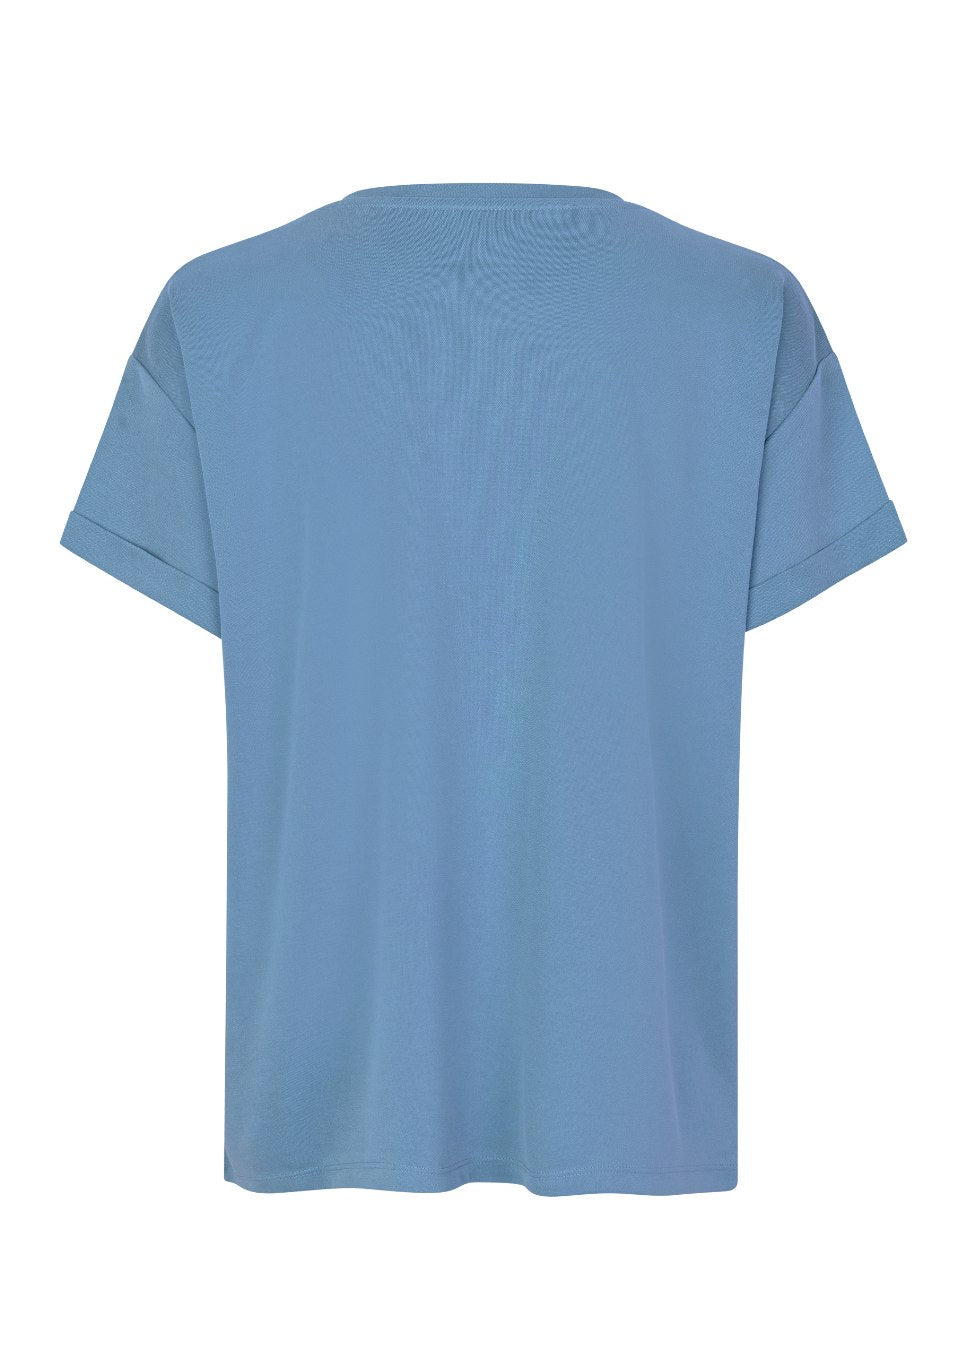 Lichtblauw T-Shirt Amana I Wij zijn fan van de basics van mbyM. Zoals dit mooie lichtblauwe T-shirt Amana met omgeslagen mouwen. Het lichtblauwe Amana shirt gemaakt van heerlijk zachte duurzame stof heeft een ronde hals en valt losjes. Shop de nieuwe collectie dames T-shirts, basic shirts, mbyM T-shirts in kleuren.